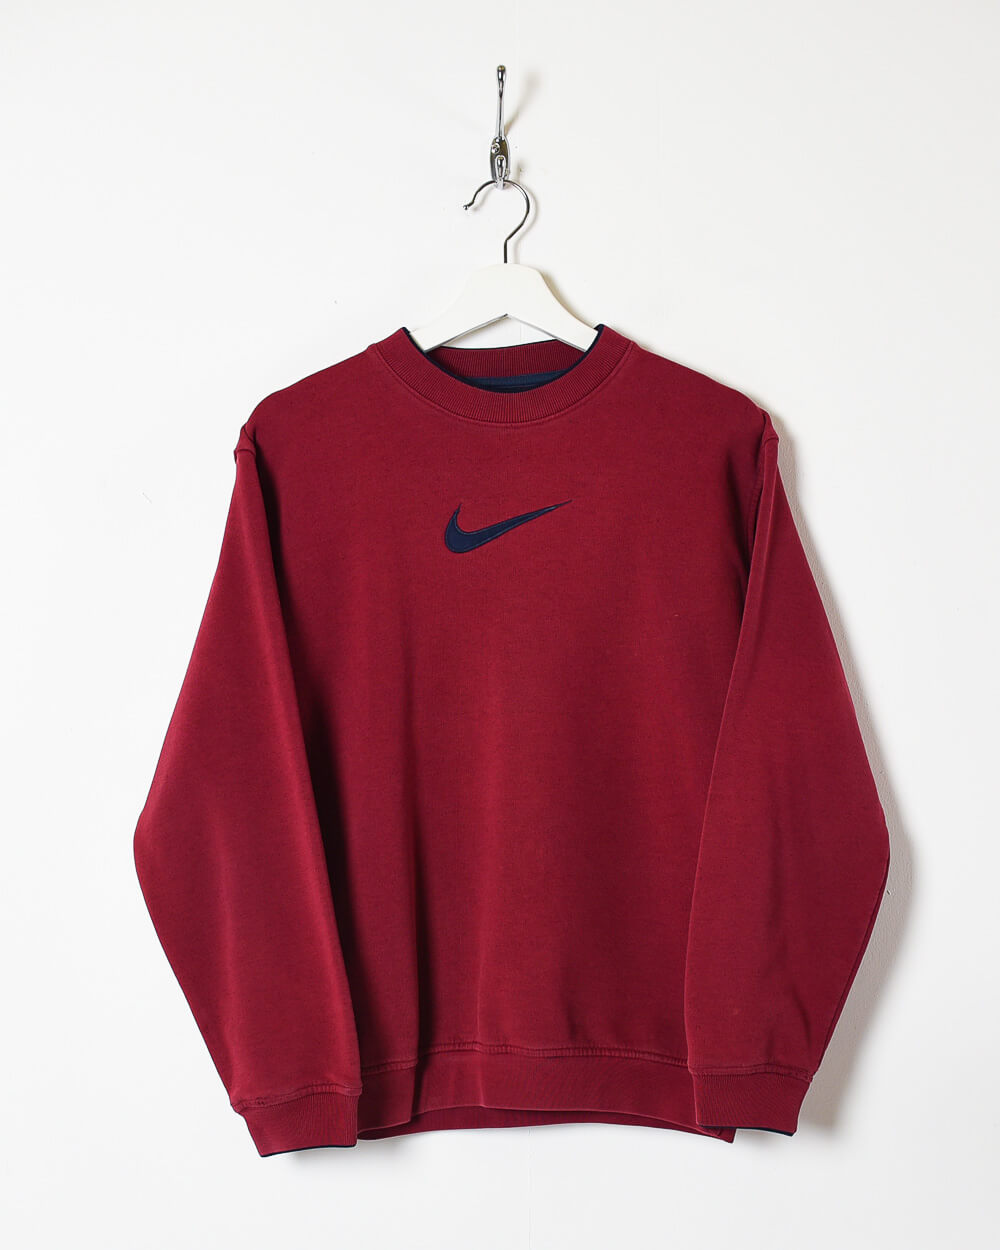 Maroon Nike Sweatshirt - Small